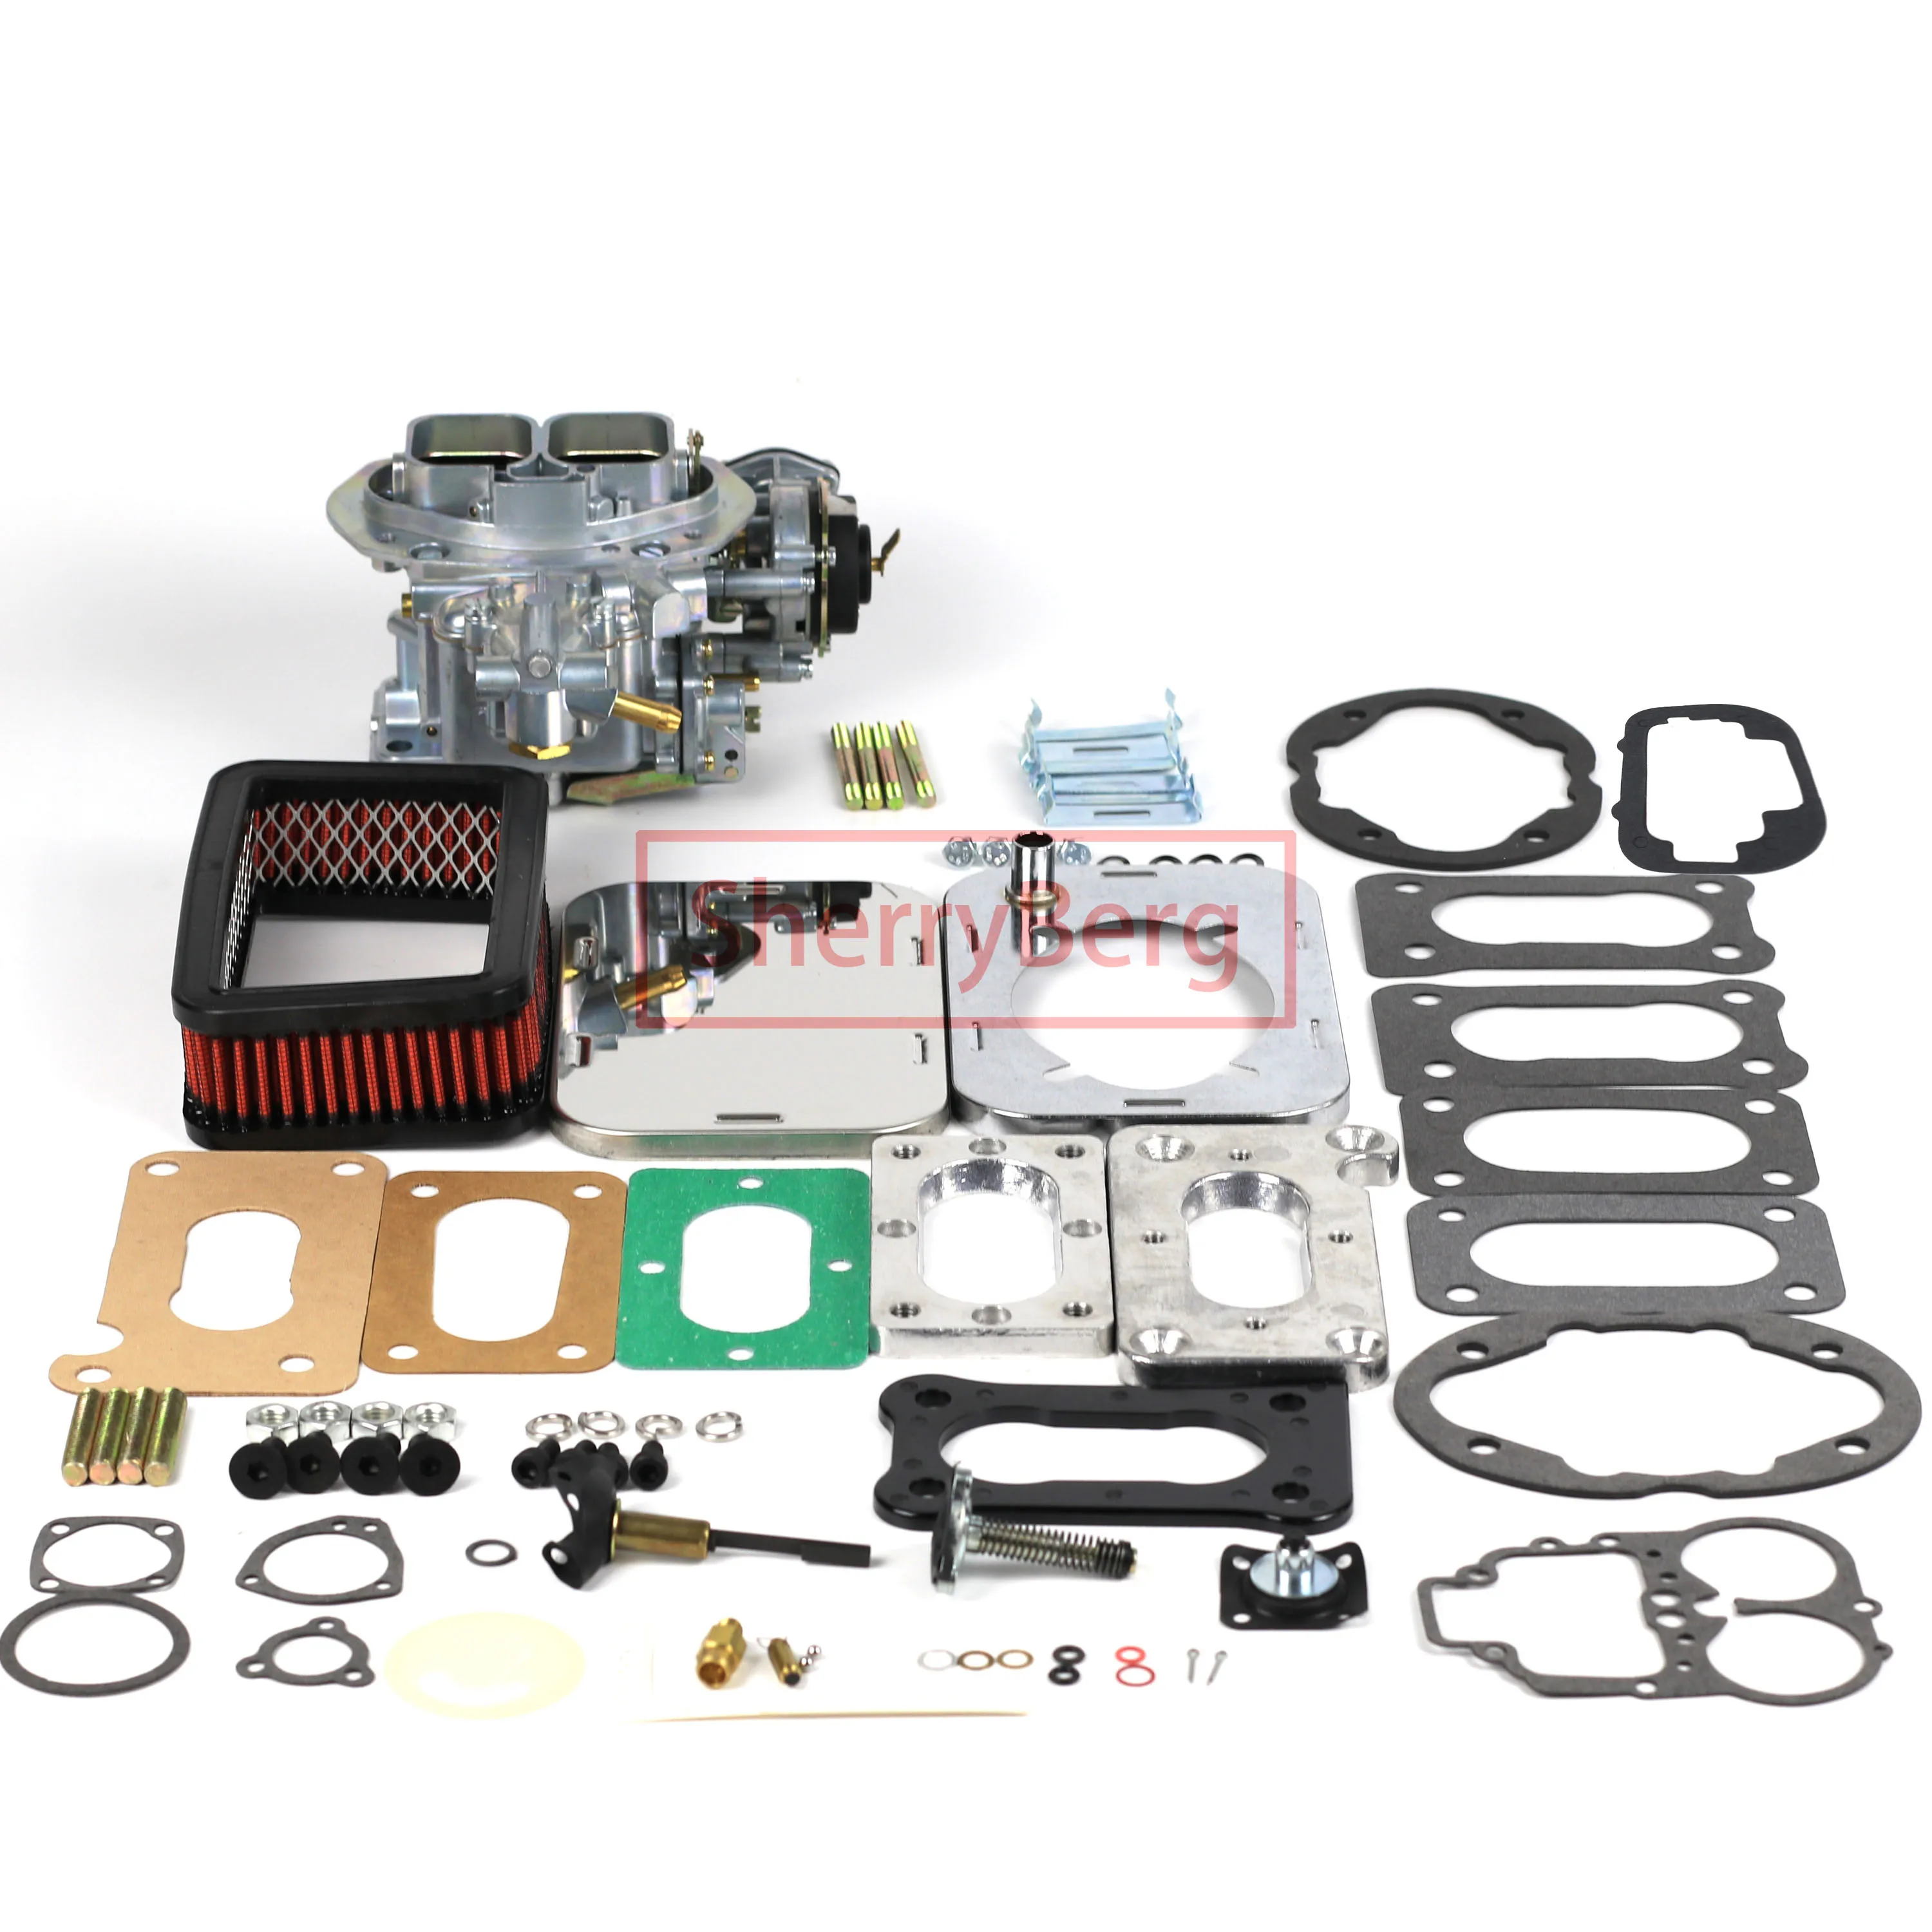 

SherryBerg Fajs EMPI 32/36 DFEV Carb Carburetor + Adapter Plate Kit + Air Filter (Cleaner 65mm)+GASKET Set for Mazda B2000 B2200